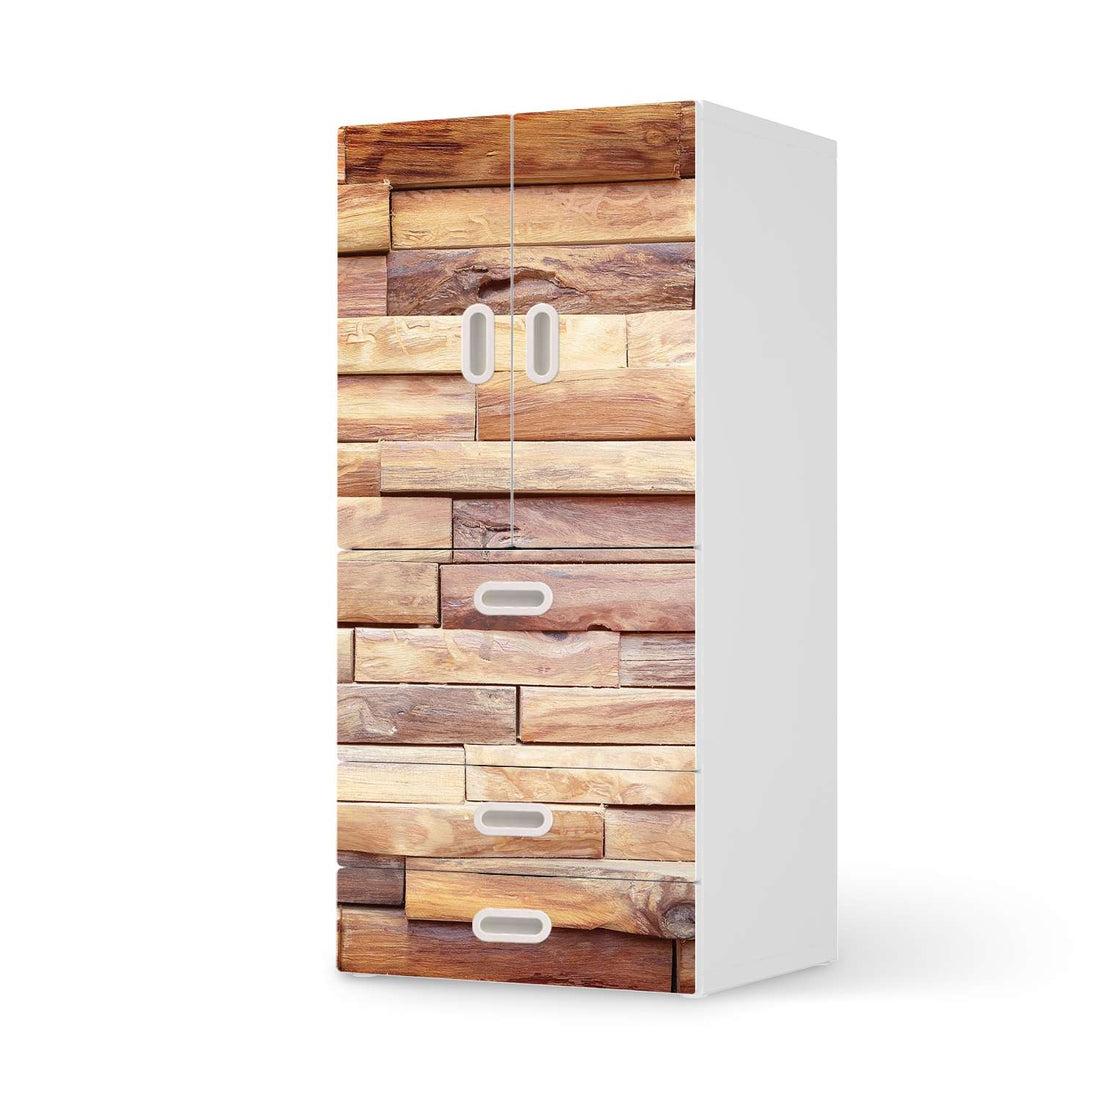 Möbelfolie Artwood - IKEA Stuva / Fritids kombiniert - 3 Schubladen und 2 kleine Türen  - weiss